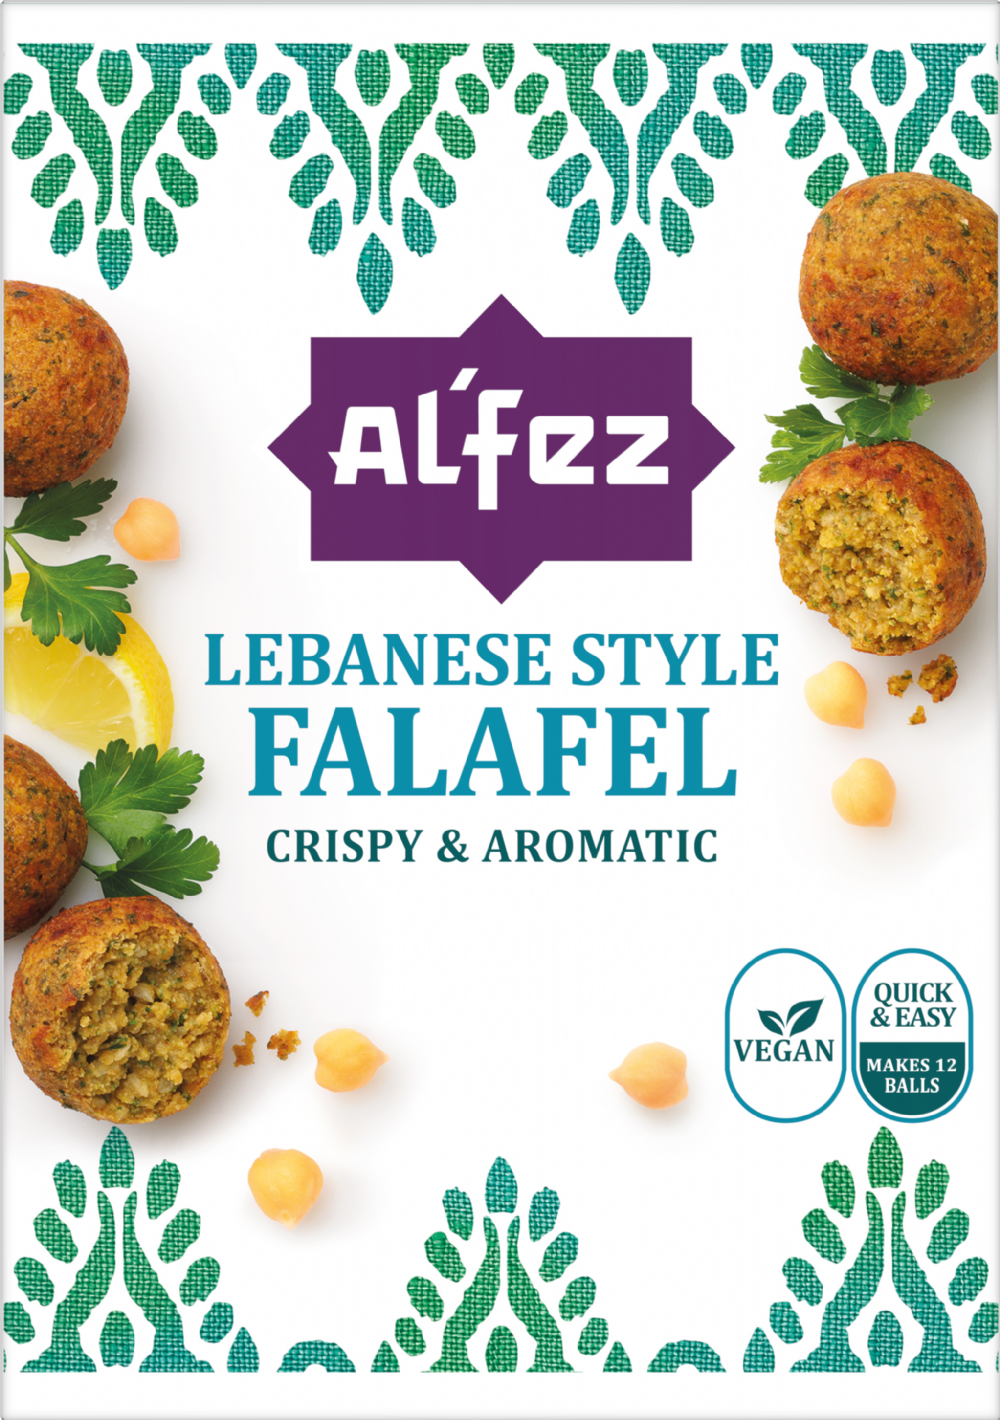 AL'FEZ Lebanese Style Falafel 150g